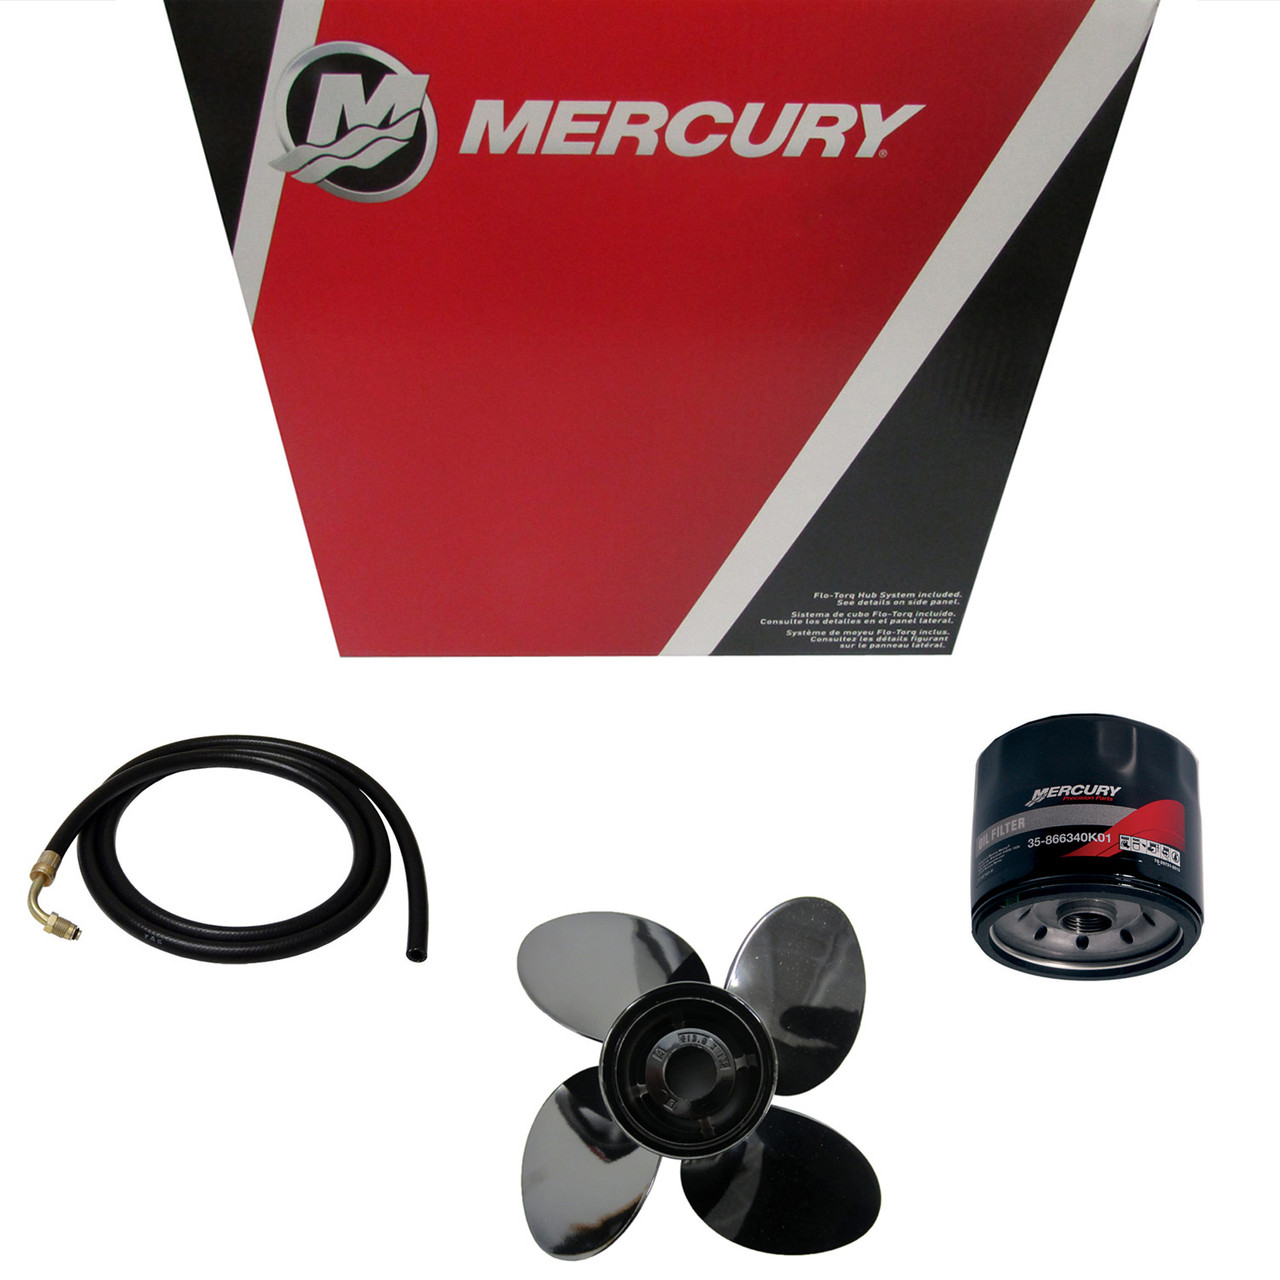 Mercury Marine / Mercruiser New OEM Rev4 14.6X19 Lh, 48-8M0151320